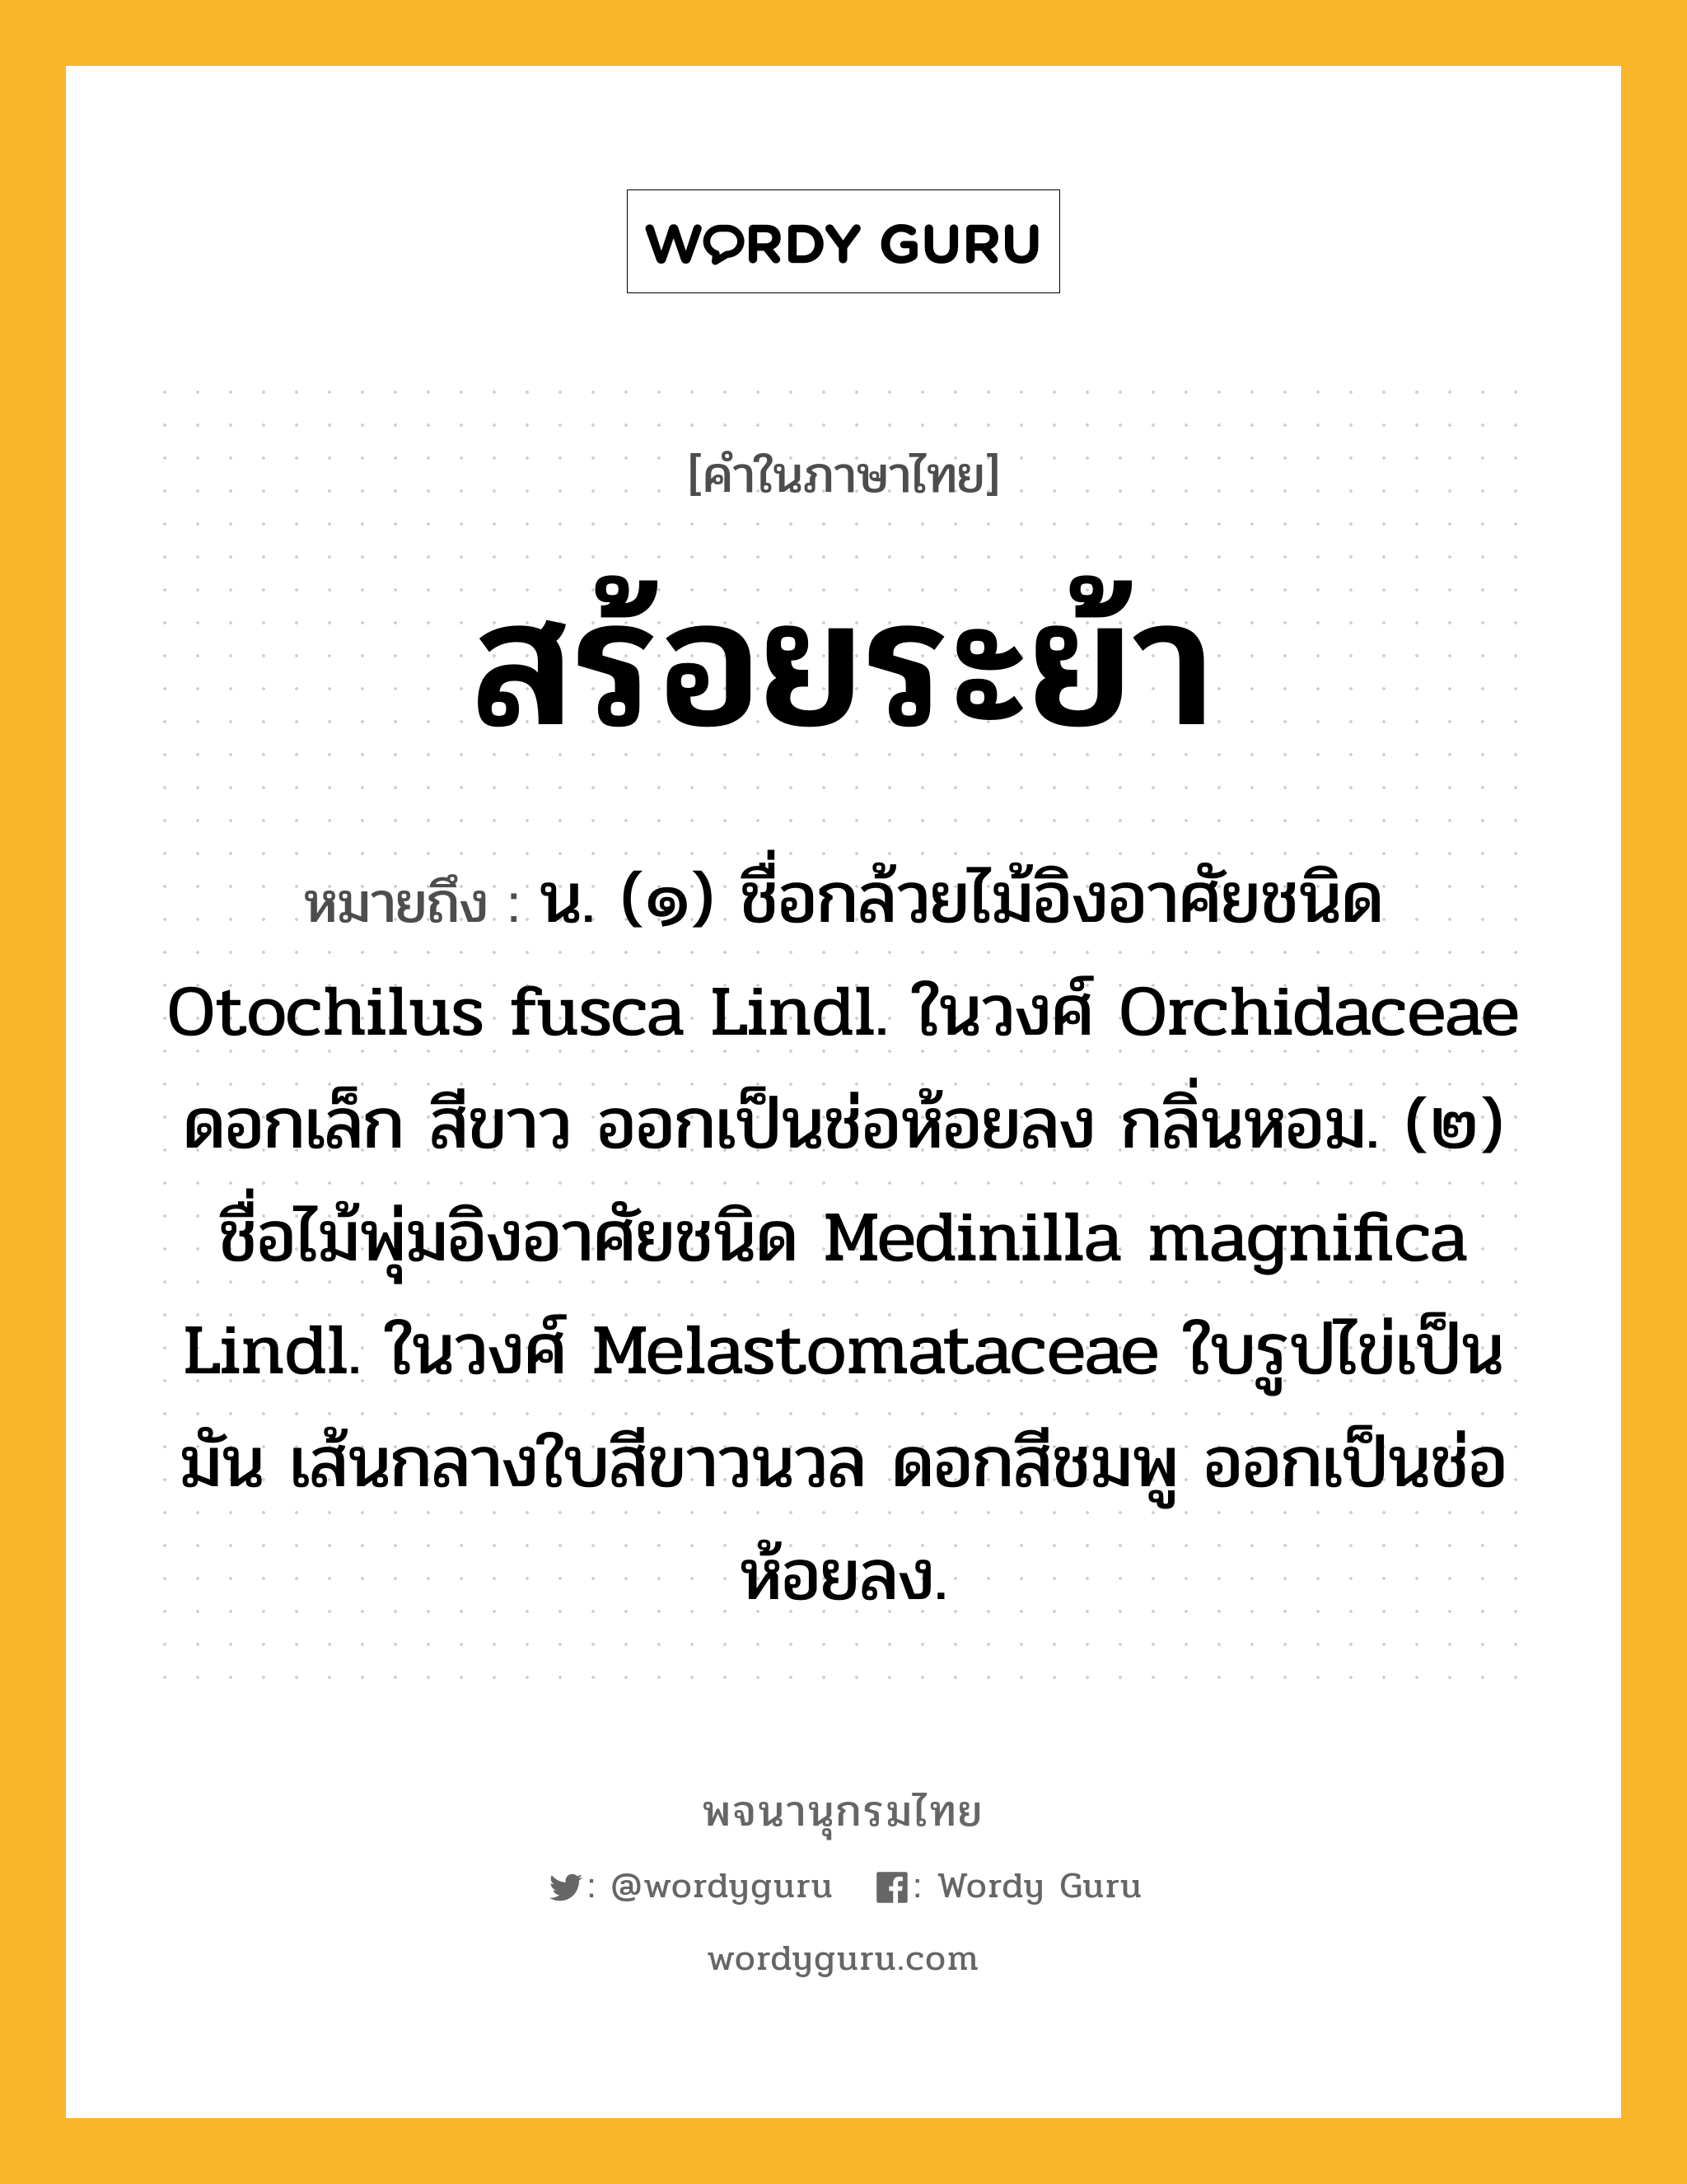 สร้อยระย้า ความหมาย หมายถึงอะไร?, คำในภาษาไทย สร้อยระย้า หมายถึง น. (๑) ชื่อกล้วยไม้อิงอาศัยชนิด Otochilus fusca Lindl. ในวงศ์ Orchidaceae ดอกเล็ก สีขาว ออกเป็นช่อห้อยลง กลิ่นหอม. (๒) ชื่อไม้พุ่มอิงอาศัยชนิด Medinilla magnifica Lindl. ในวงศ์ Melastomataceae ใบรูปไข่เป็นมัน เส้นกลางใบสีขาวนวล ดอกสีชมพู ออกเป็นช่อห้อยลง.